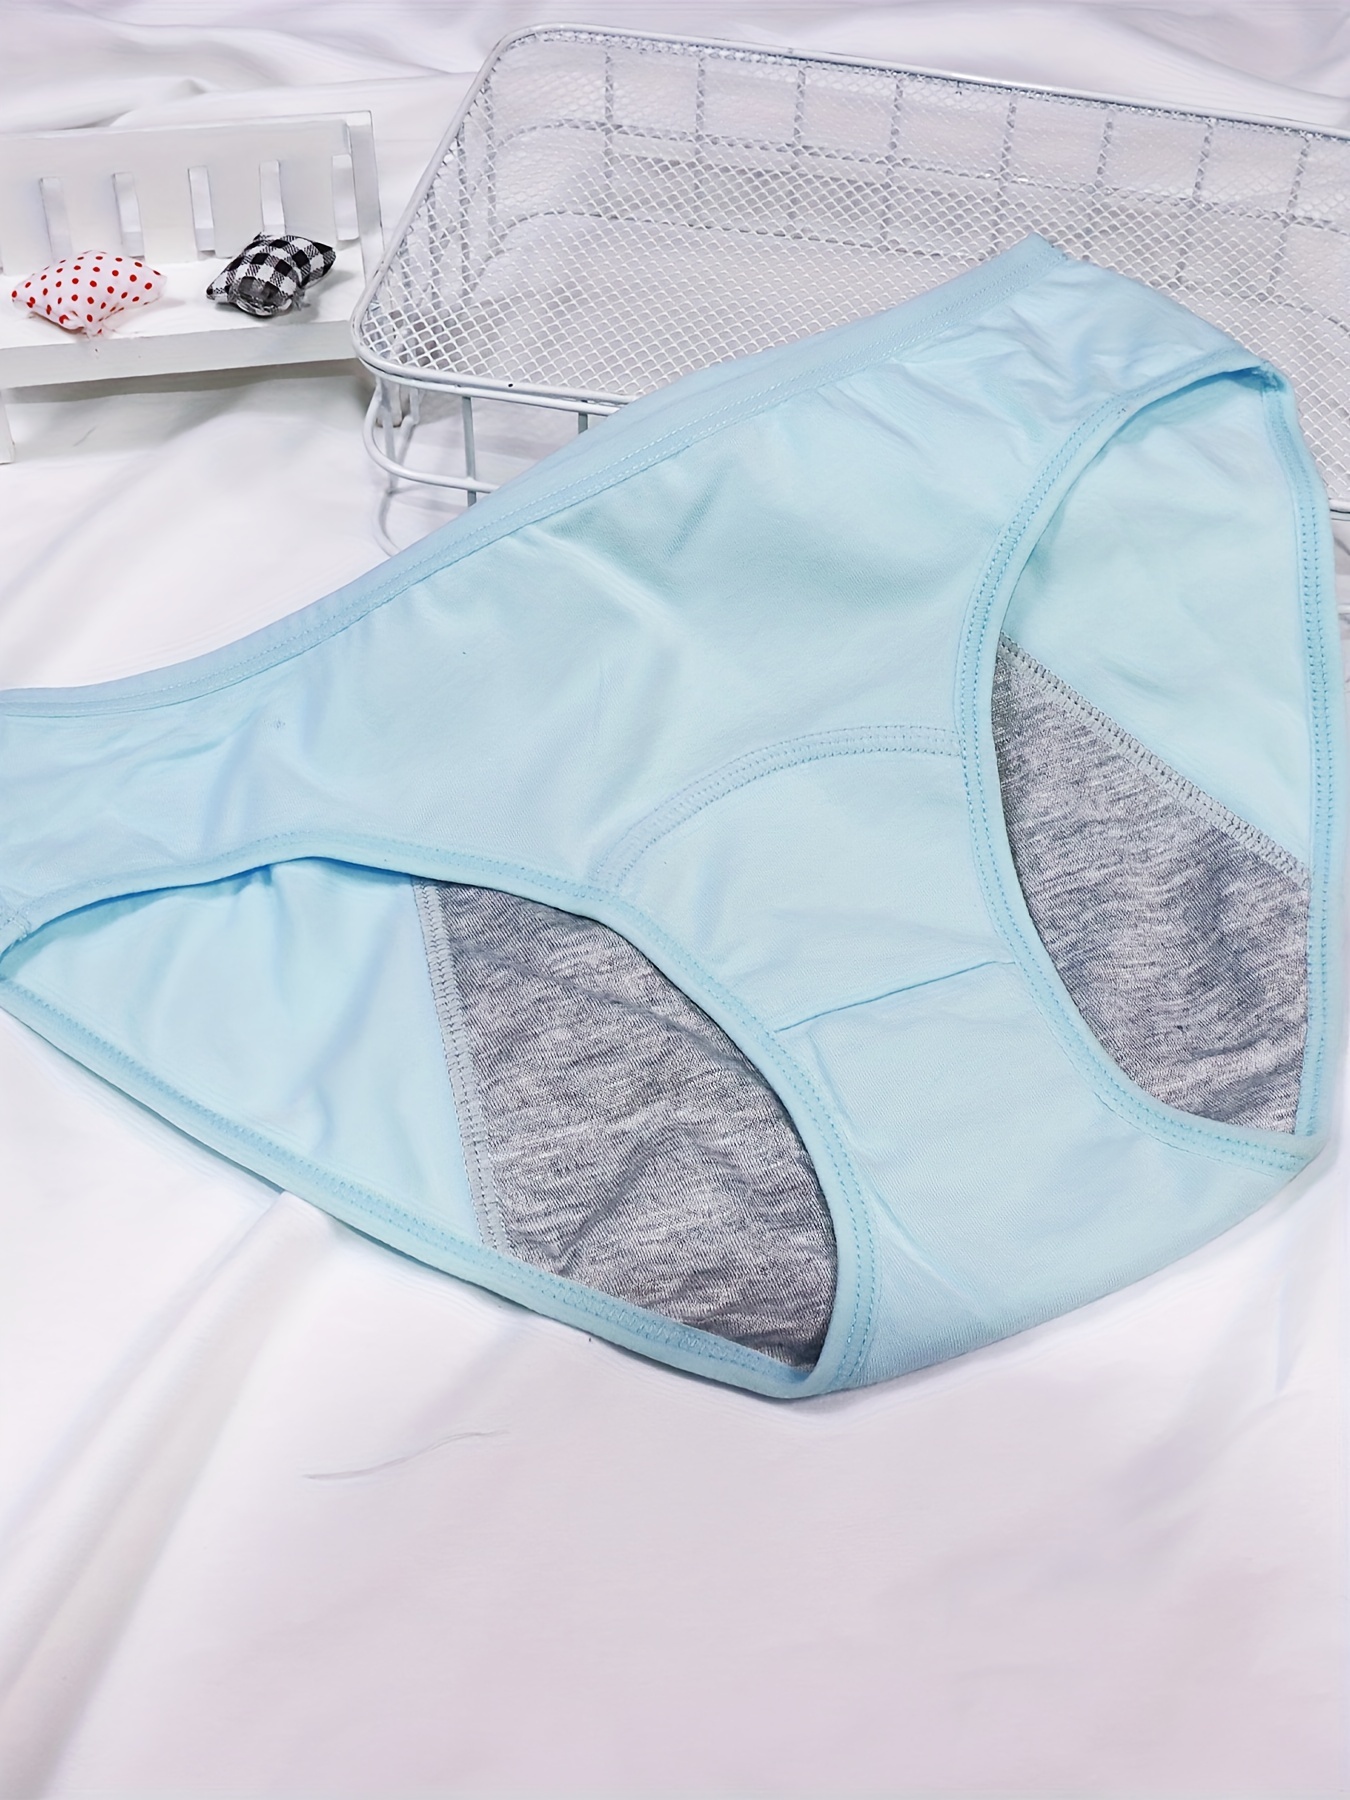 Leak Proof Period Panties for Women,Teens & Girls - Ladies